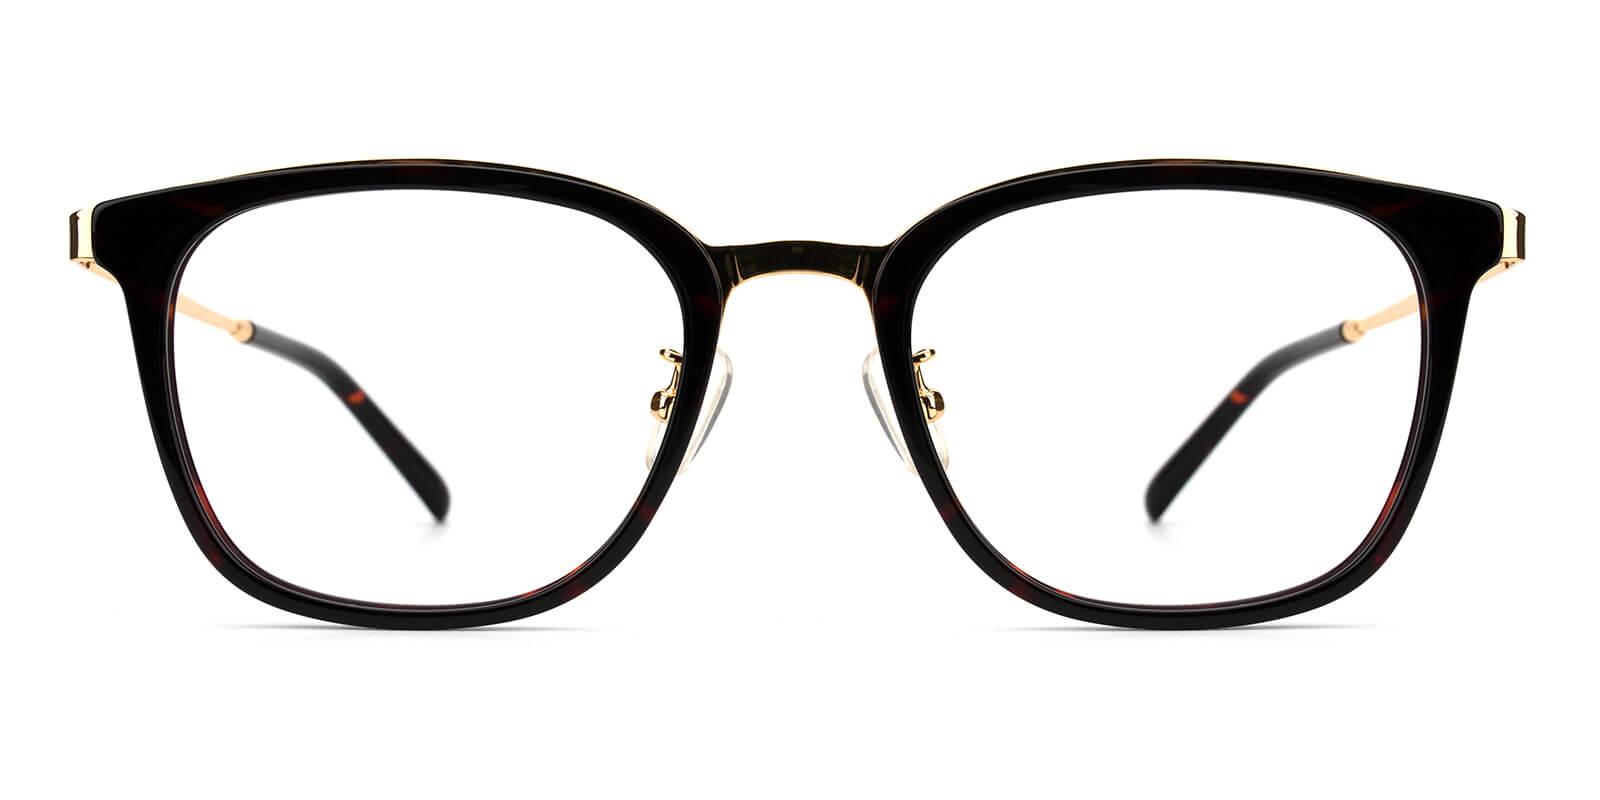 Keronito-Tortoise-Rectangle-Metal-Eyeglasses-detail